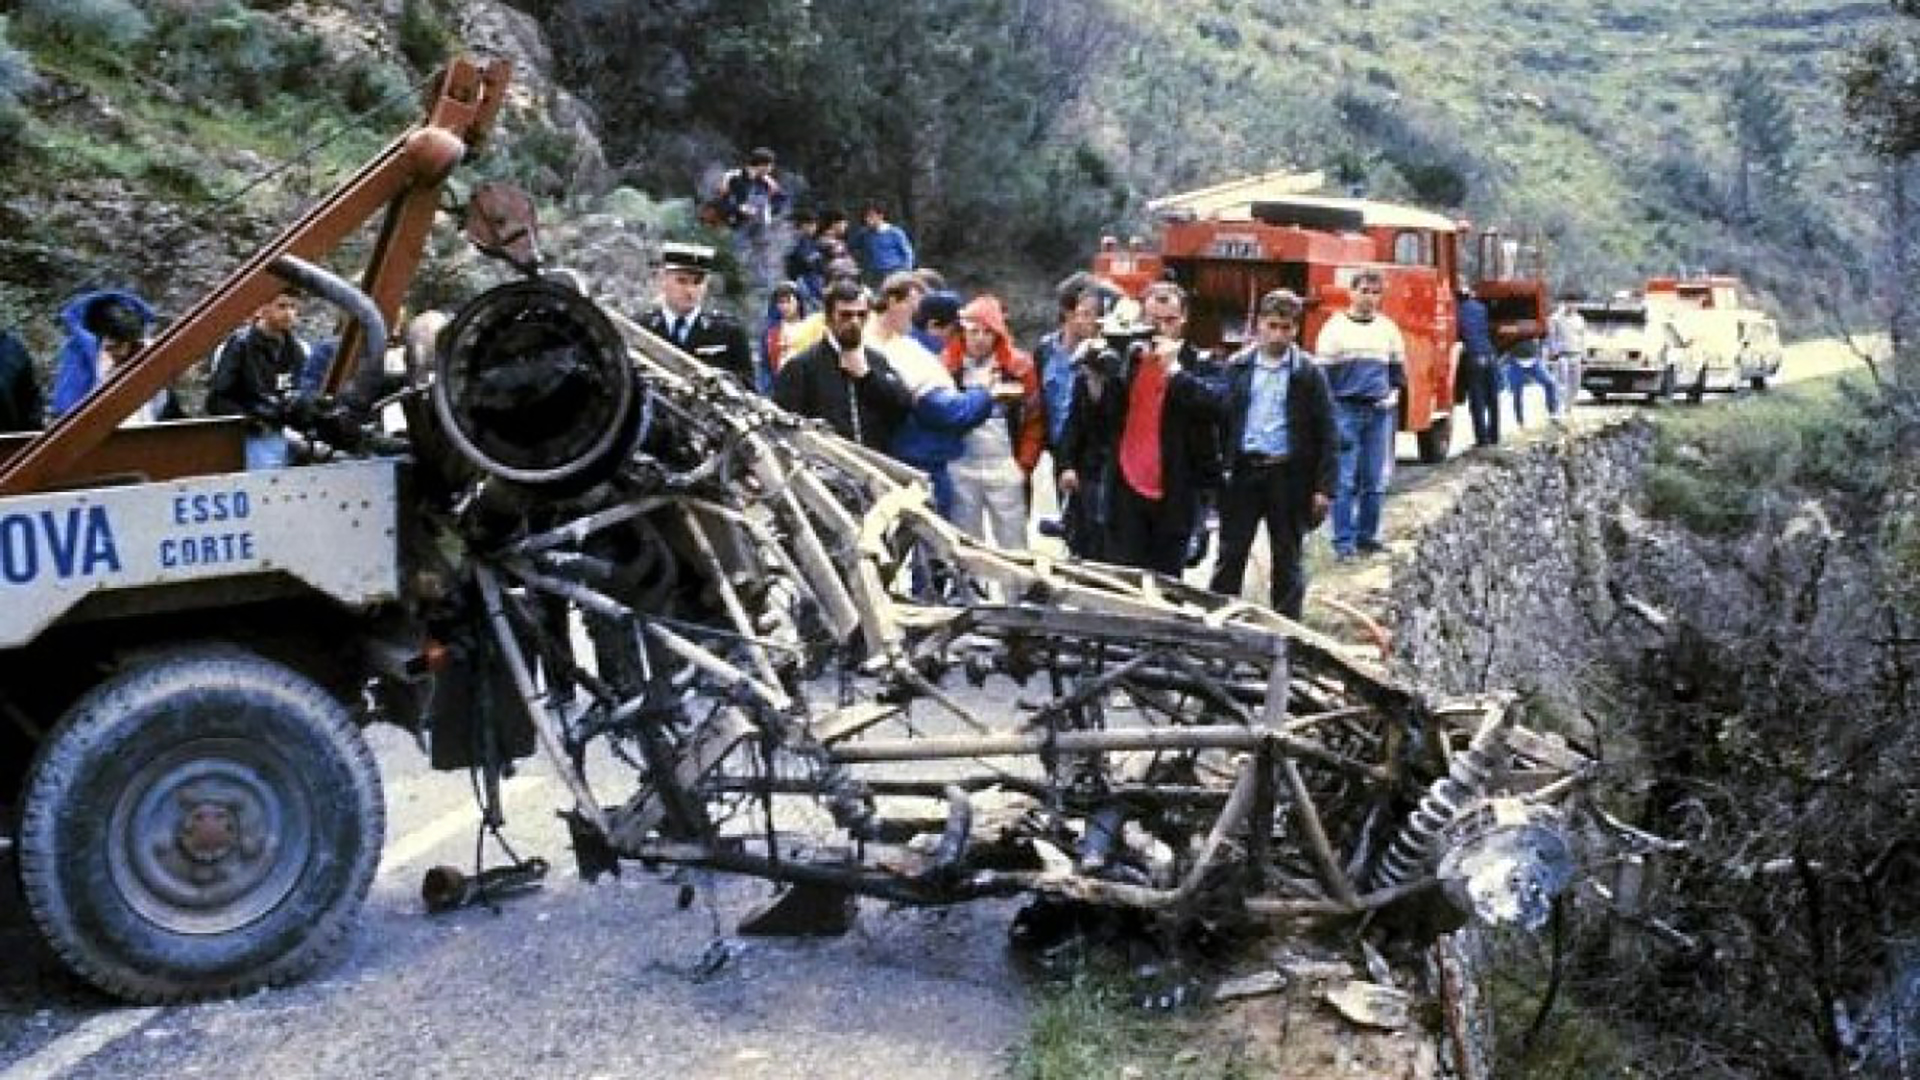 La muerte de Henry Toivonen y su navegante, Sergio Cresto, determinaron la abolición del Grupo B. Fue en mayo de 1986, nuevamente en el Rally de Córcega